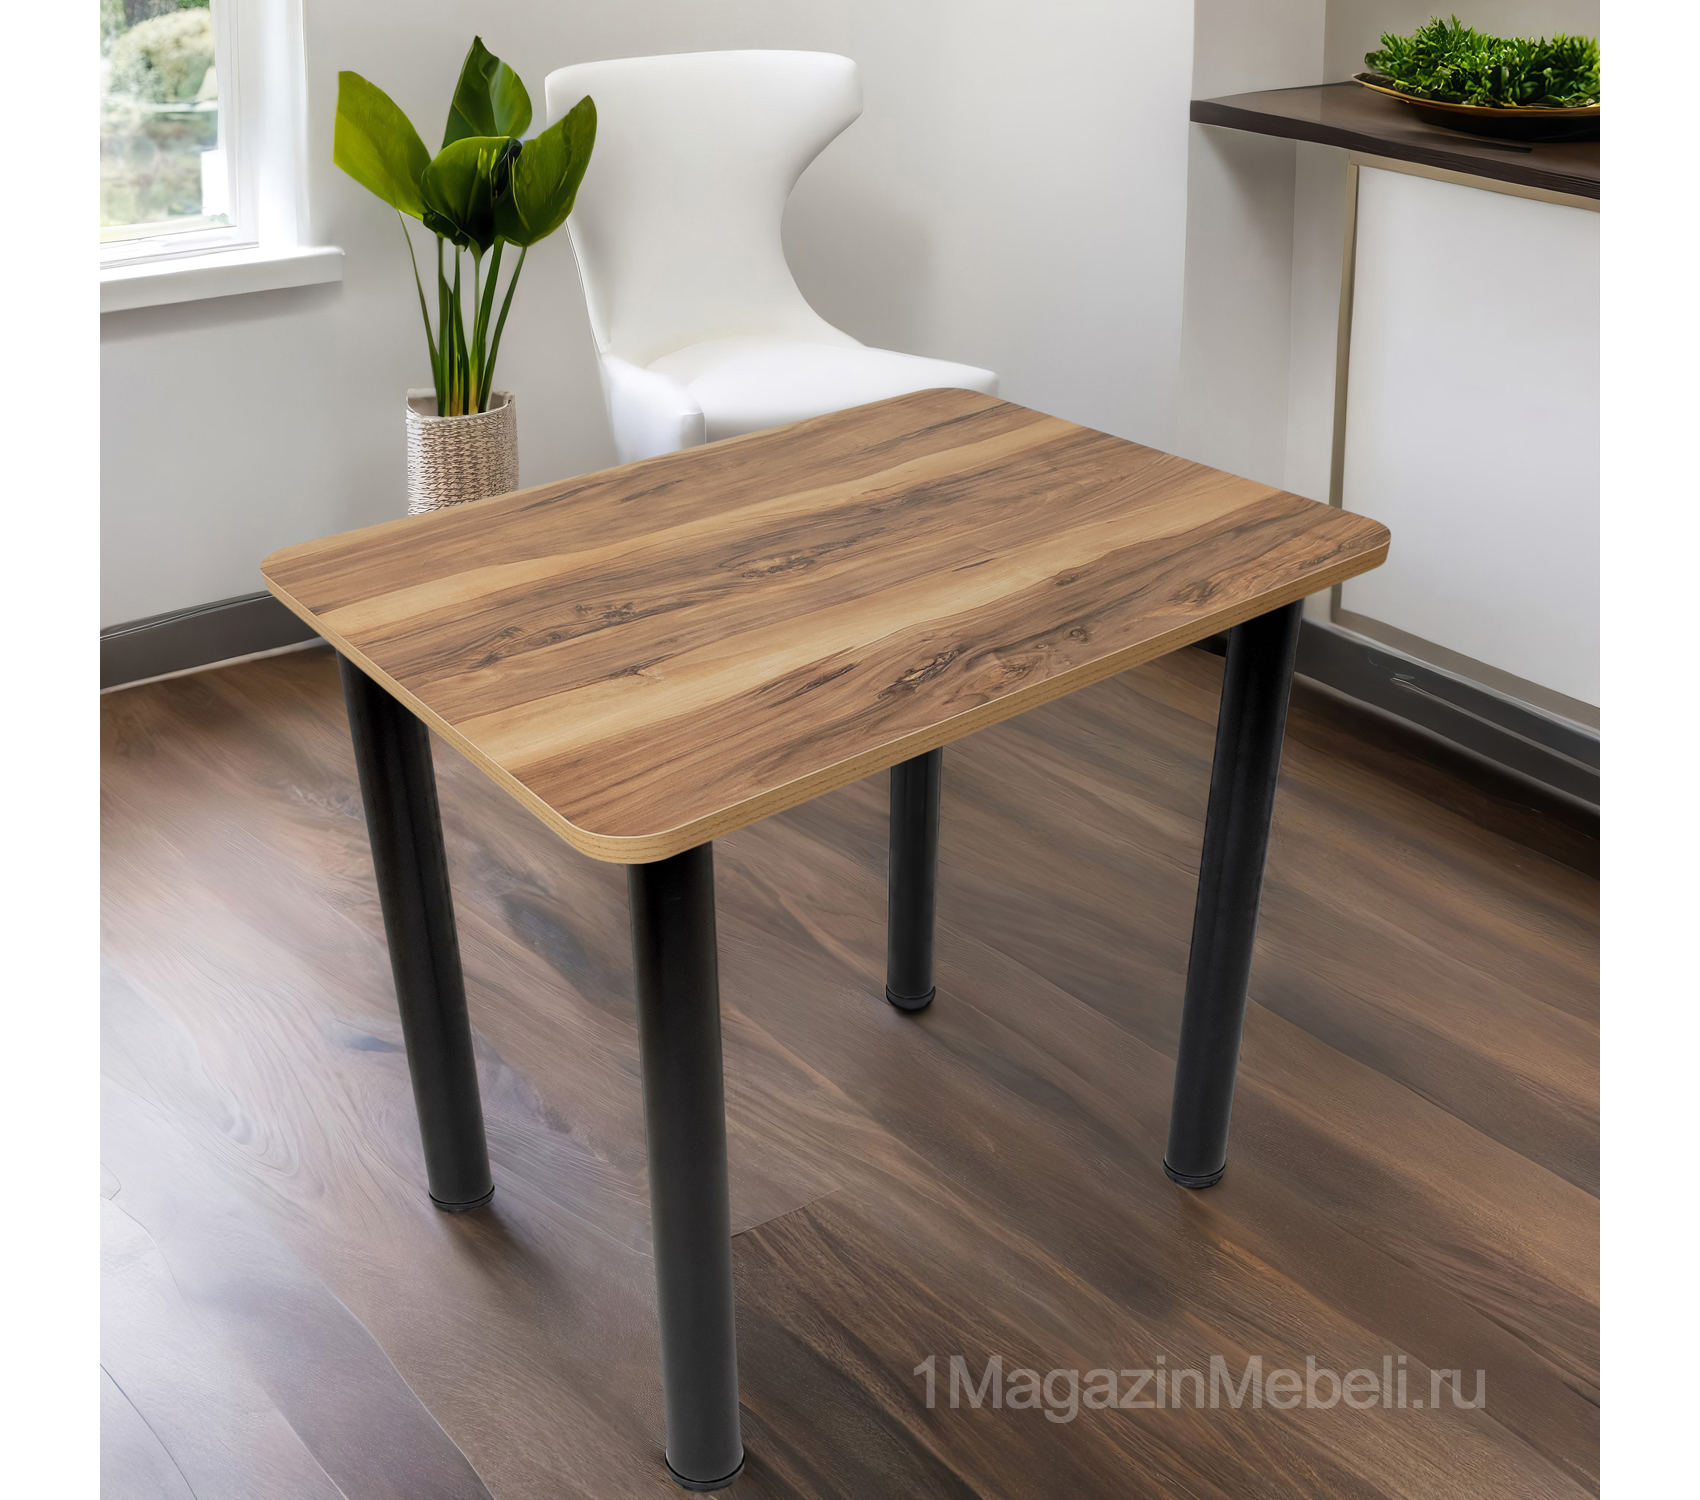 Ламинированный кухонный стол 80х60 см нераздвижной (арт. М4669)